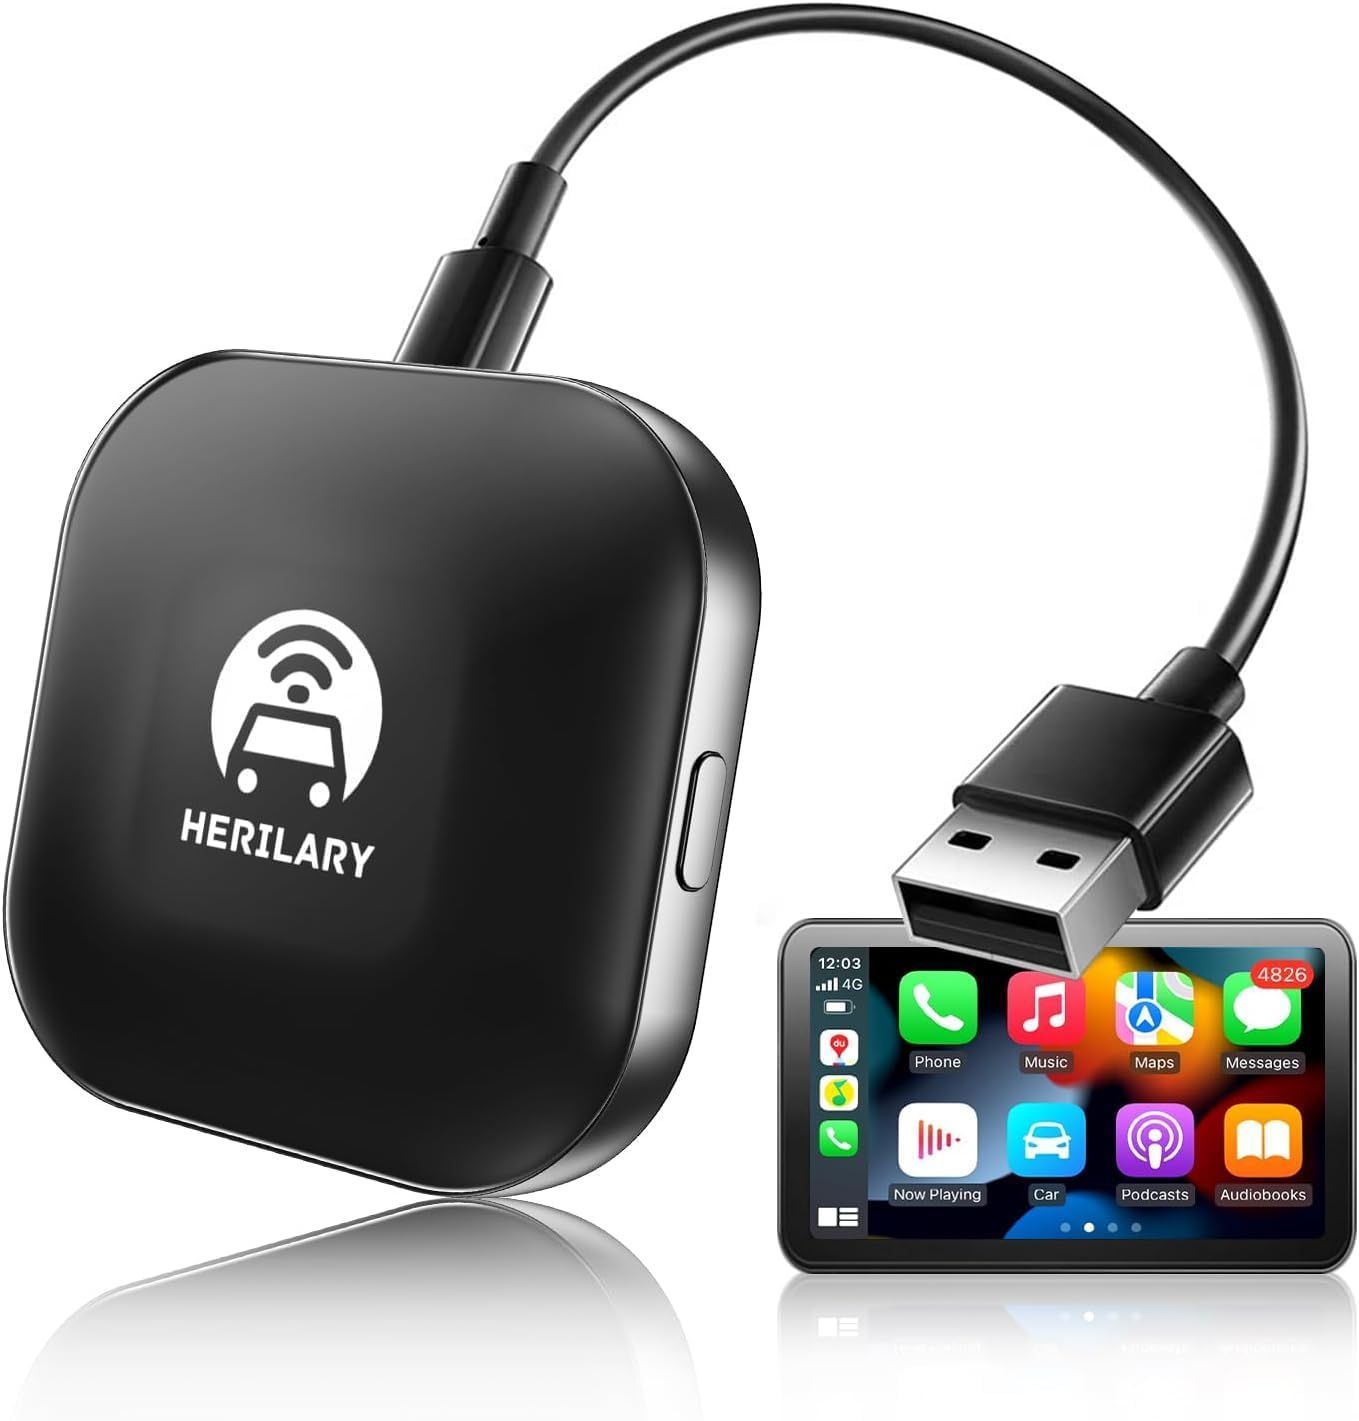 SENZZ carplay ai box CarPlayワイヤレスアダプター 有線接続のみの純正CarPlayを無線化する最新wirelessアダプター 道案内マップ/音楽/Siri/通話/メッセージ受送信 iPhone のみ対応CarPlay対応の車両